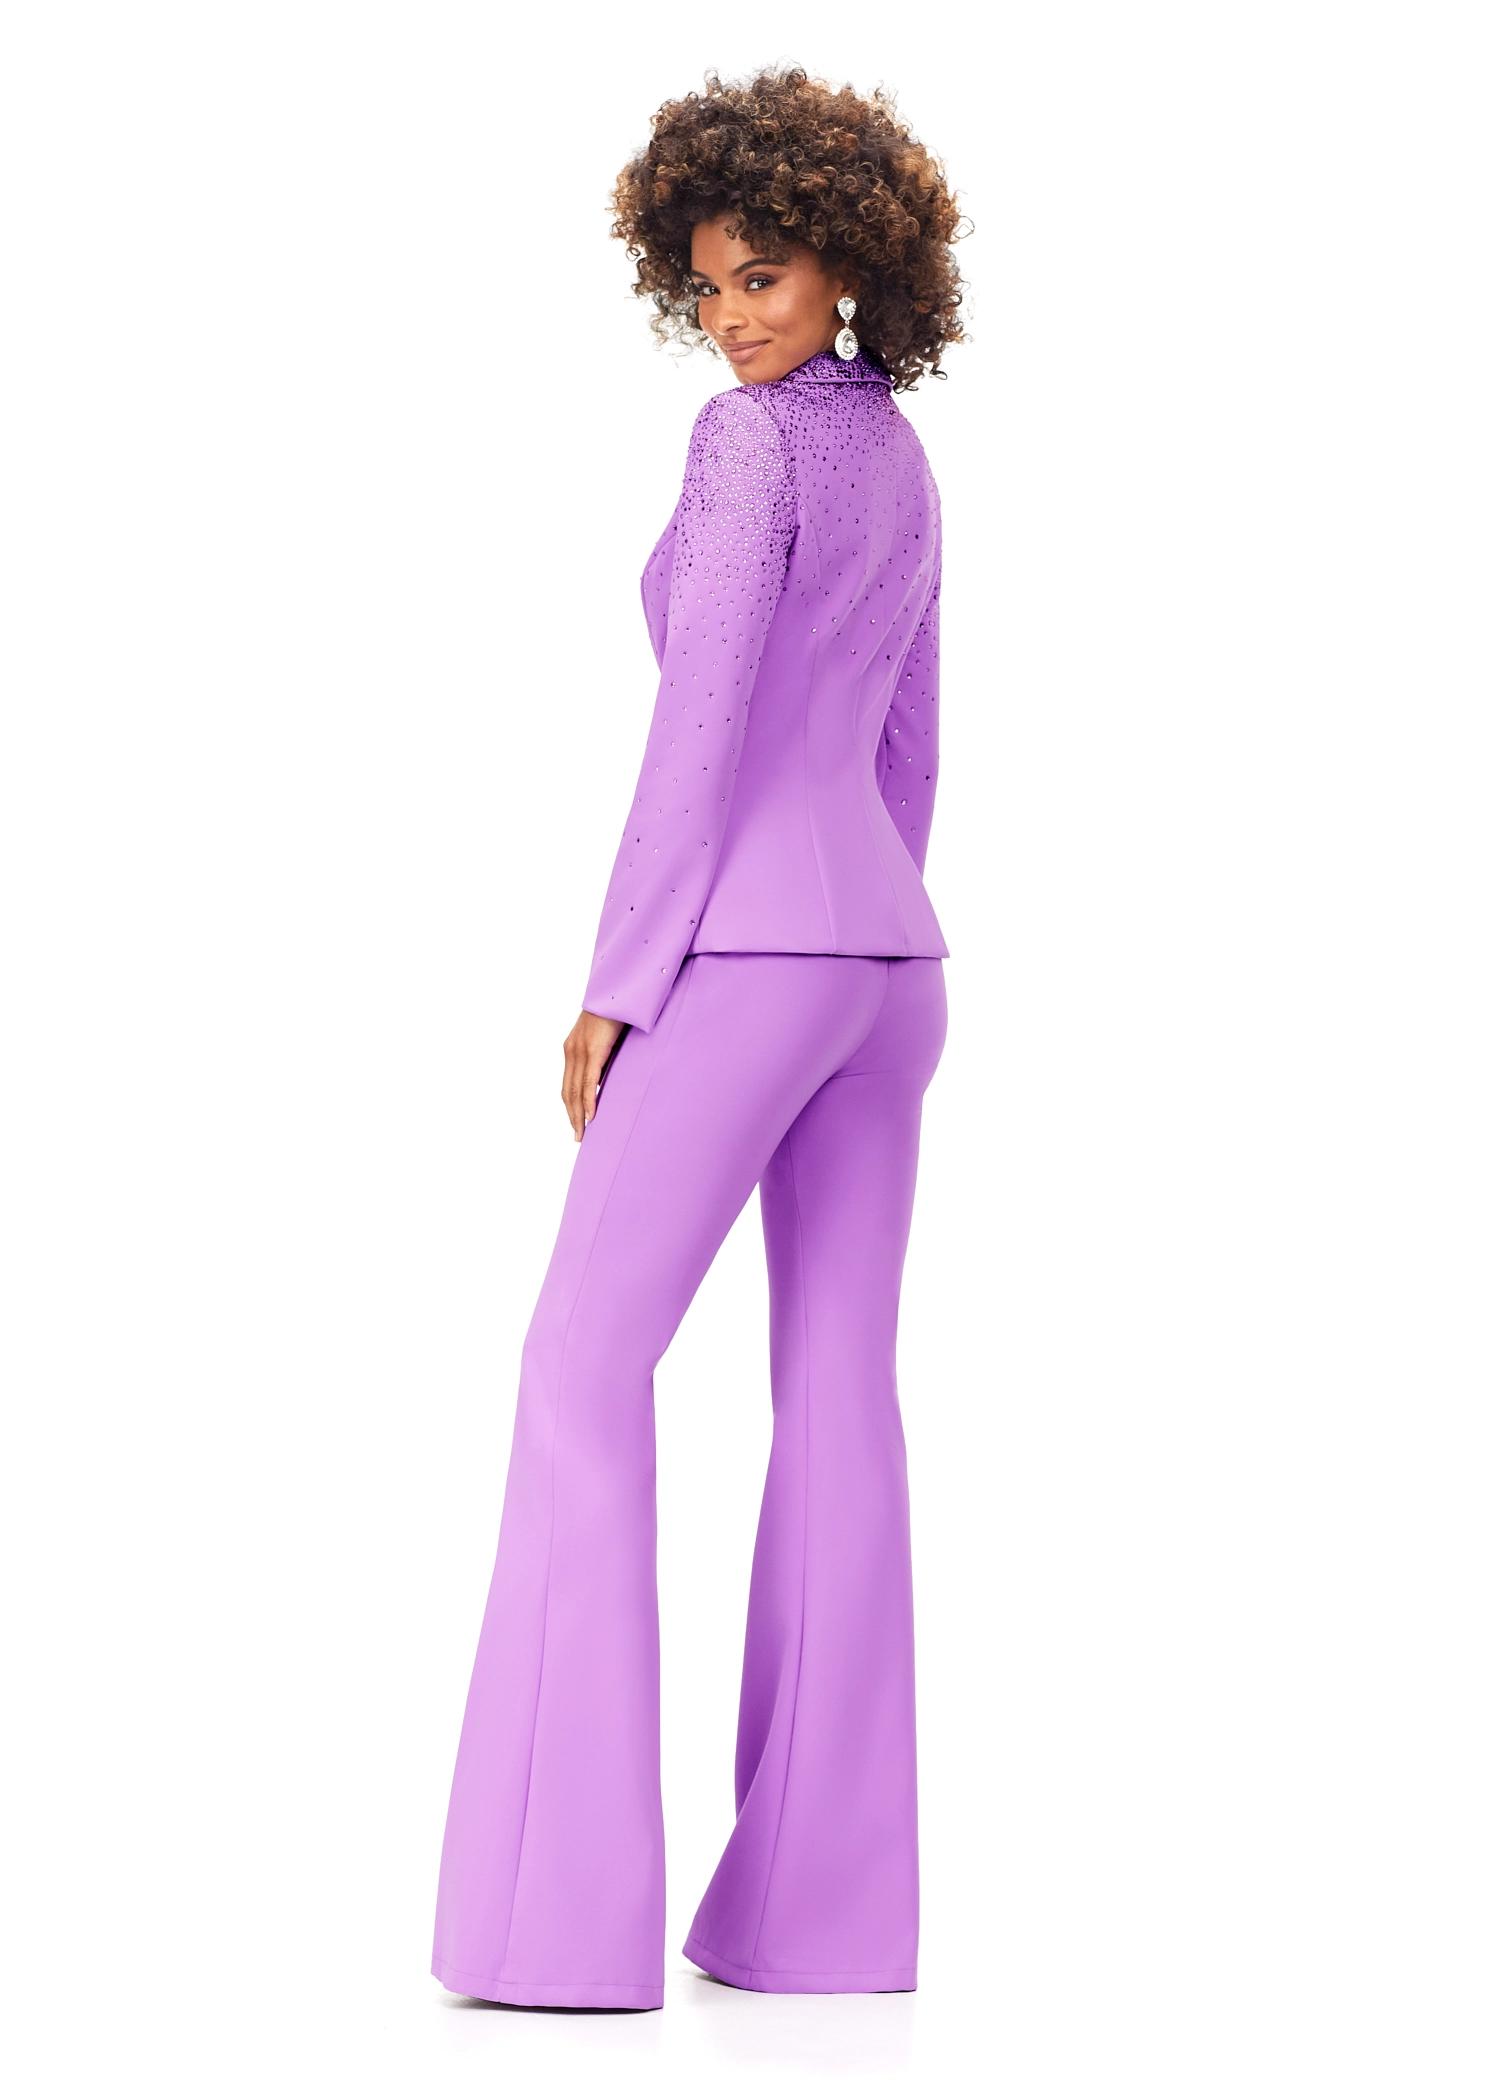 Women's Larry Levine Suit, 2 pcs Pants & Jacket, Purple, Zip Front, Size  10P | eBay